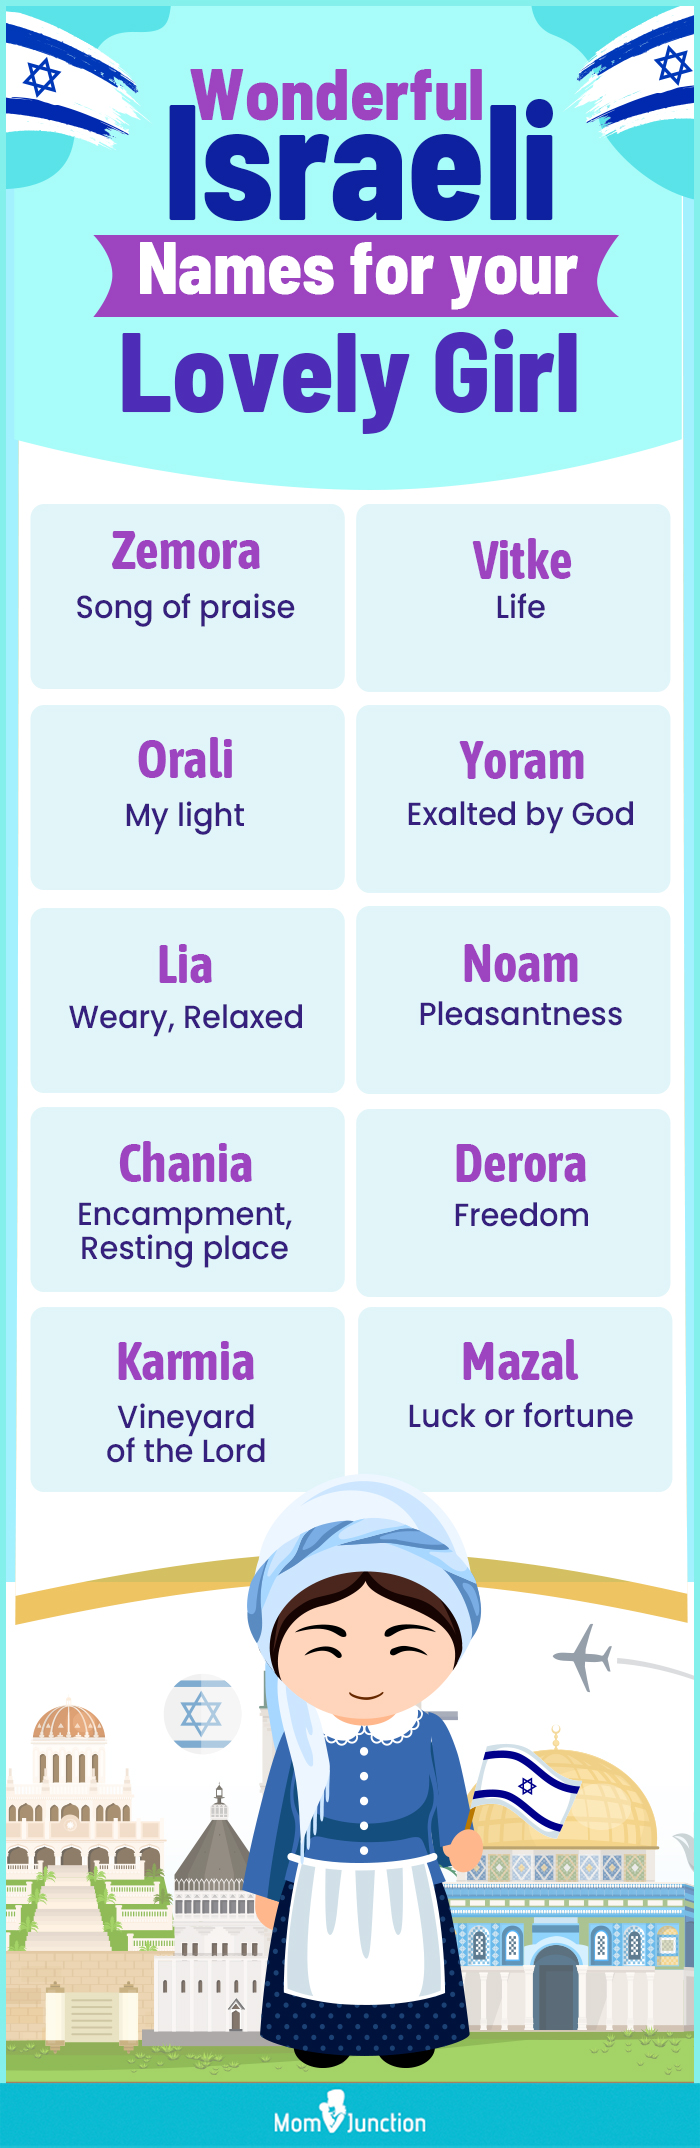 wonderful israeli names for your lovely girl (infographic)